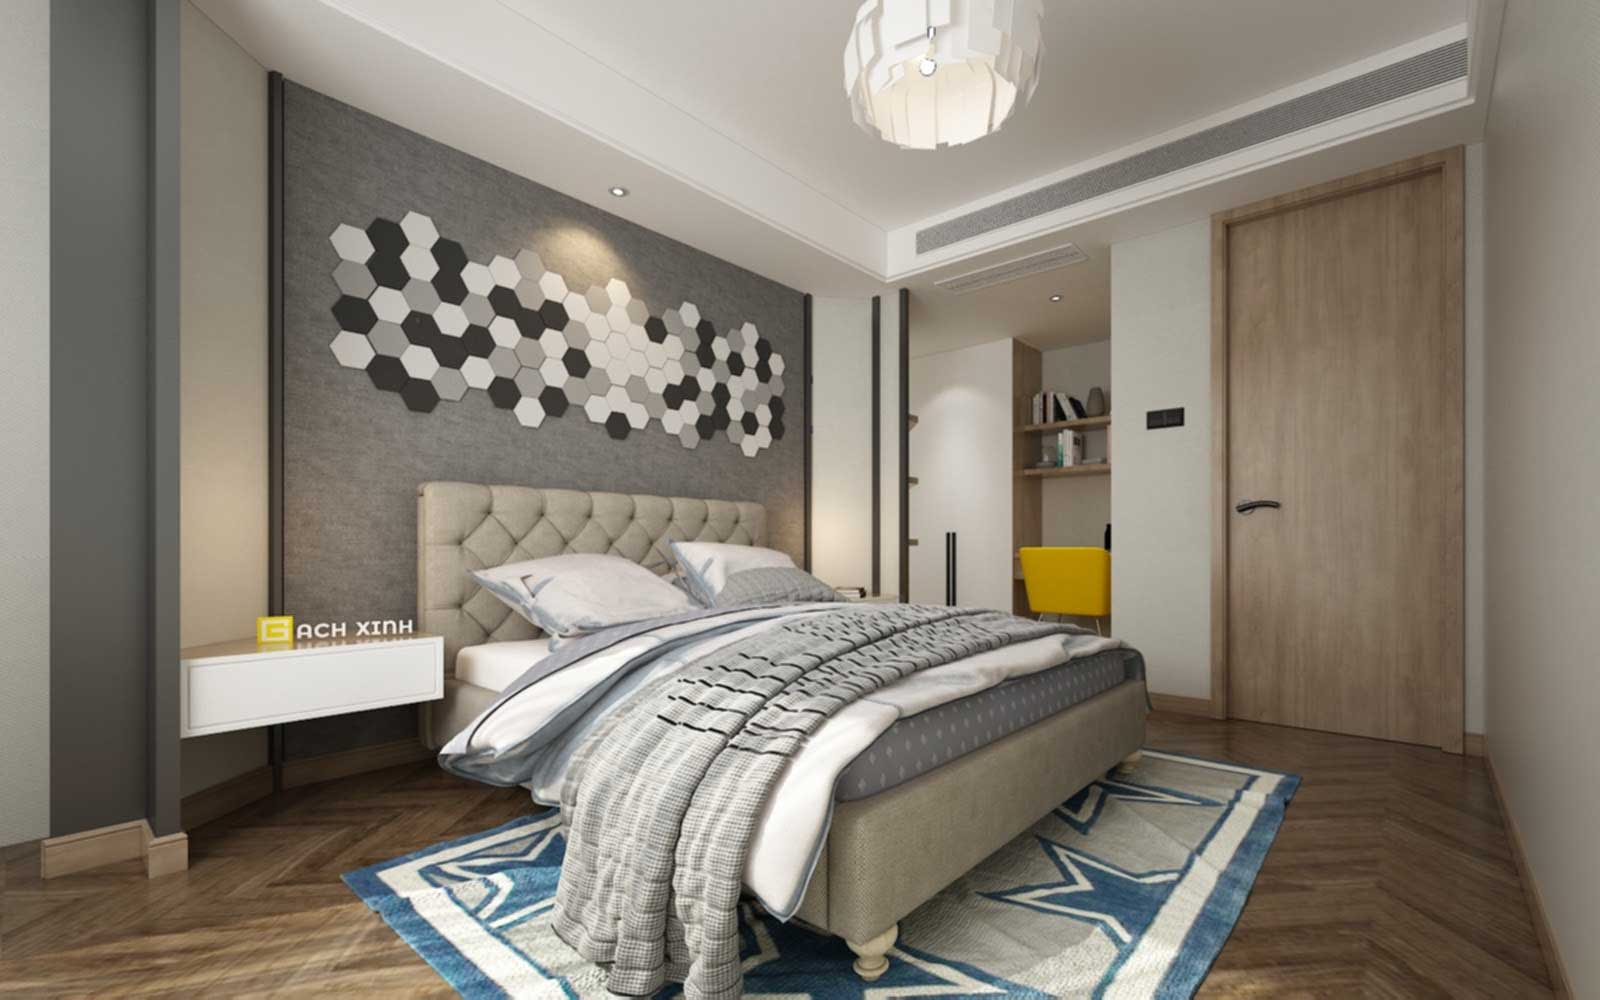 Ốp tường phòng ngủ theo cách kết hợp màu tương phản tạo điểm nhấn